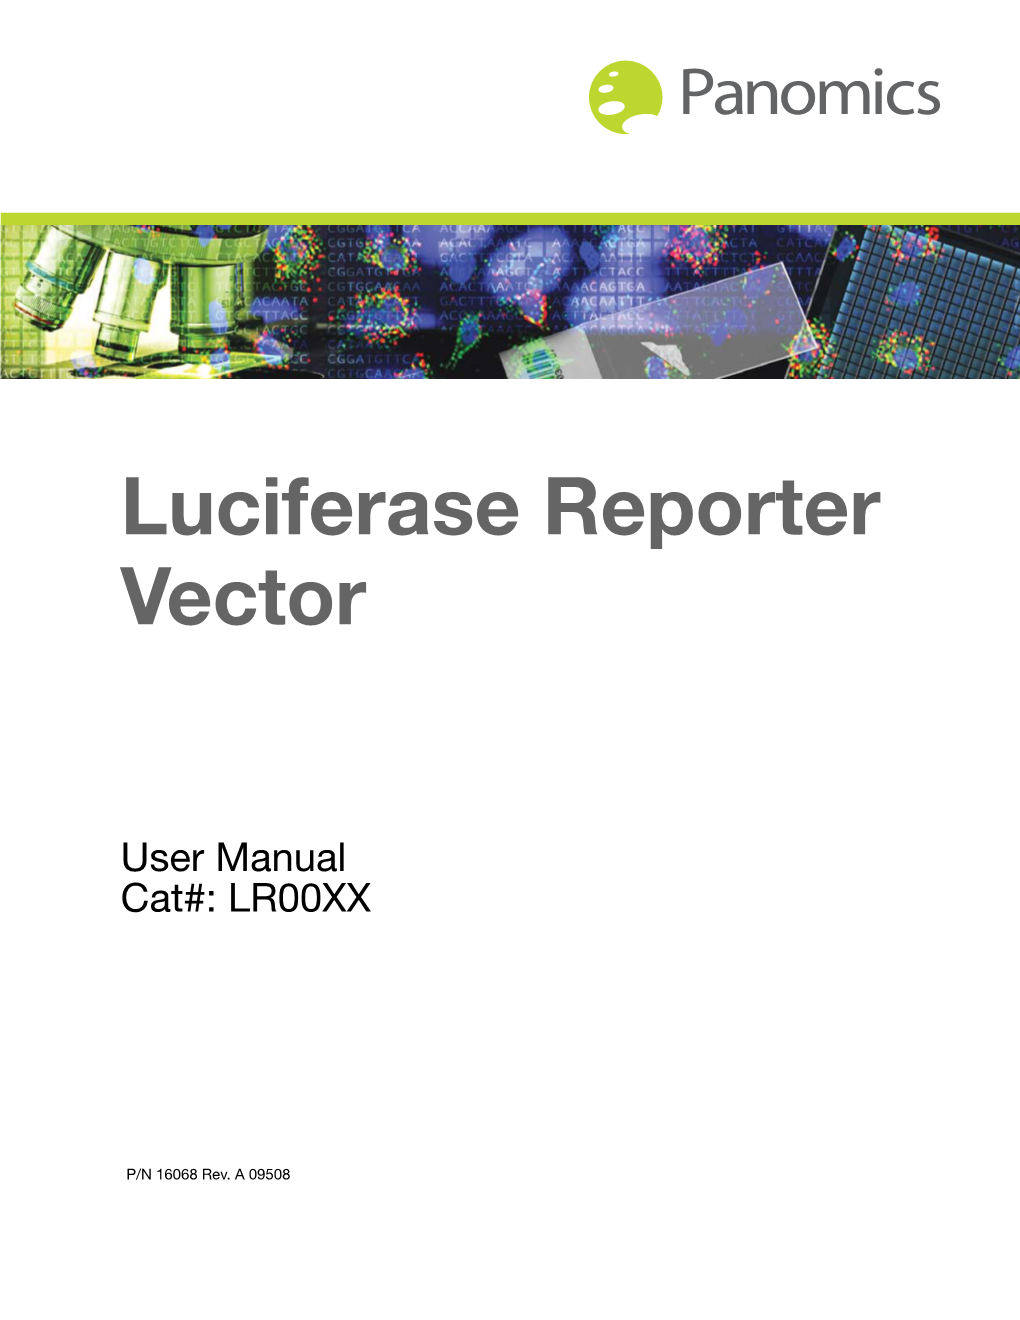 Luciferase Reporter Vector